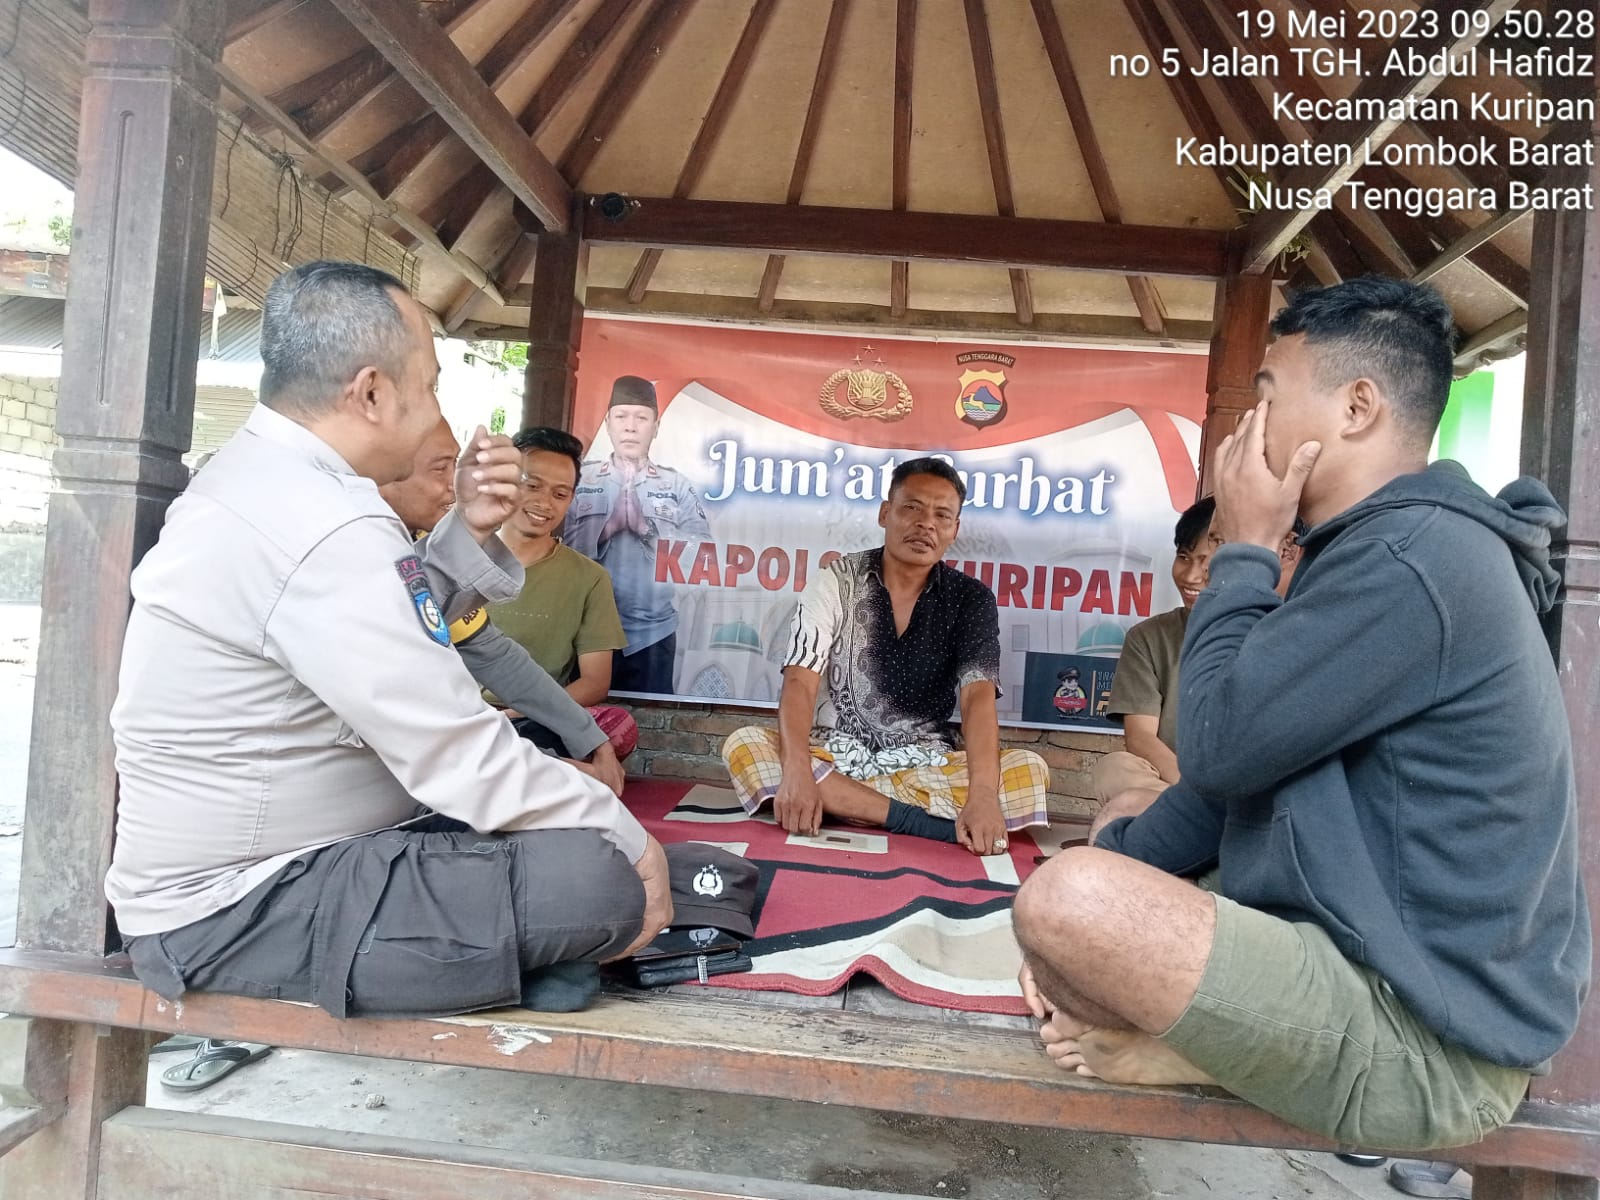 Jumat Curhat Polsek Kuripan di Desa Kuripan, Bahas Antsipasi Kerawan Jelang Tahun Politik